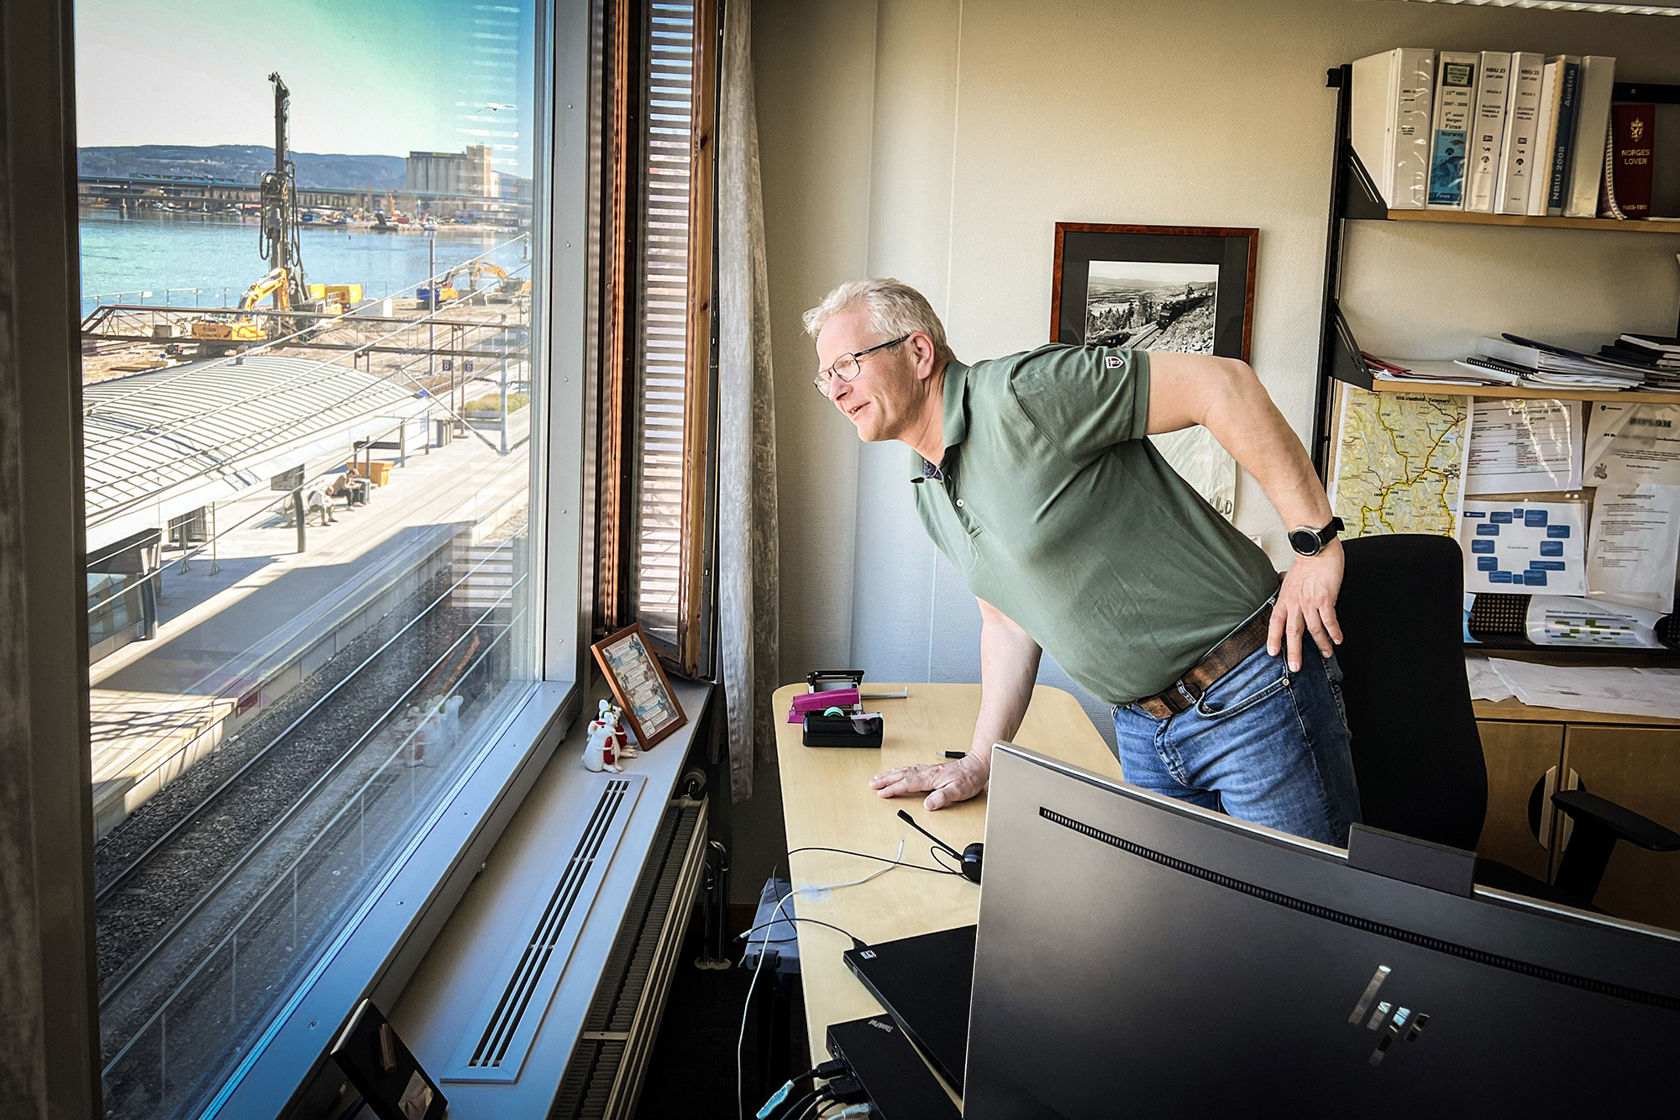 Mann lener seg over skrivebordet på sitt kontor og ser ut over stasjonsområdet utenfor vinudet.